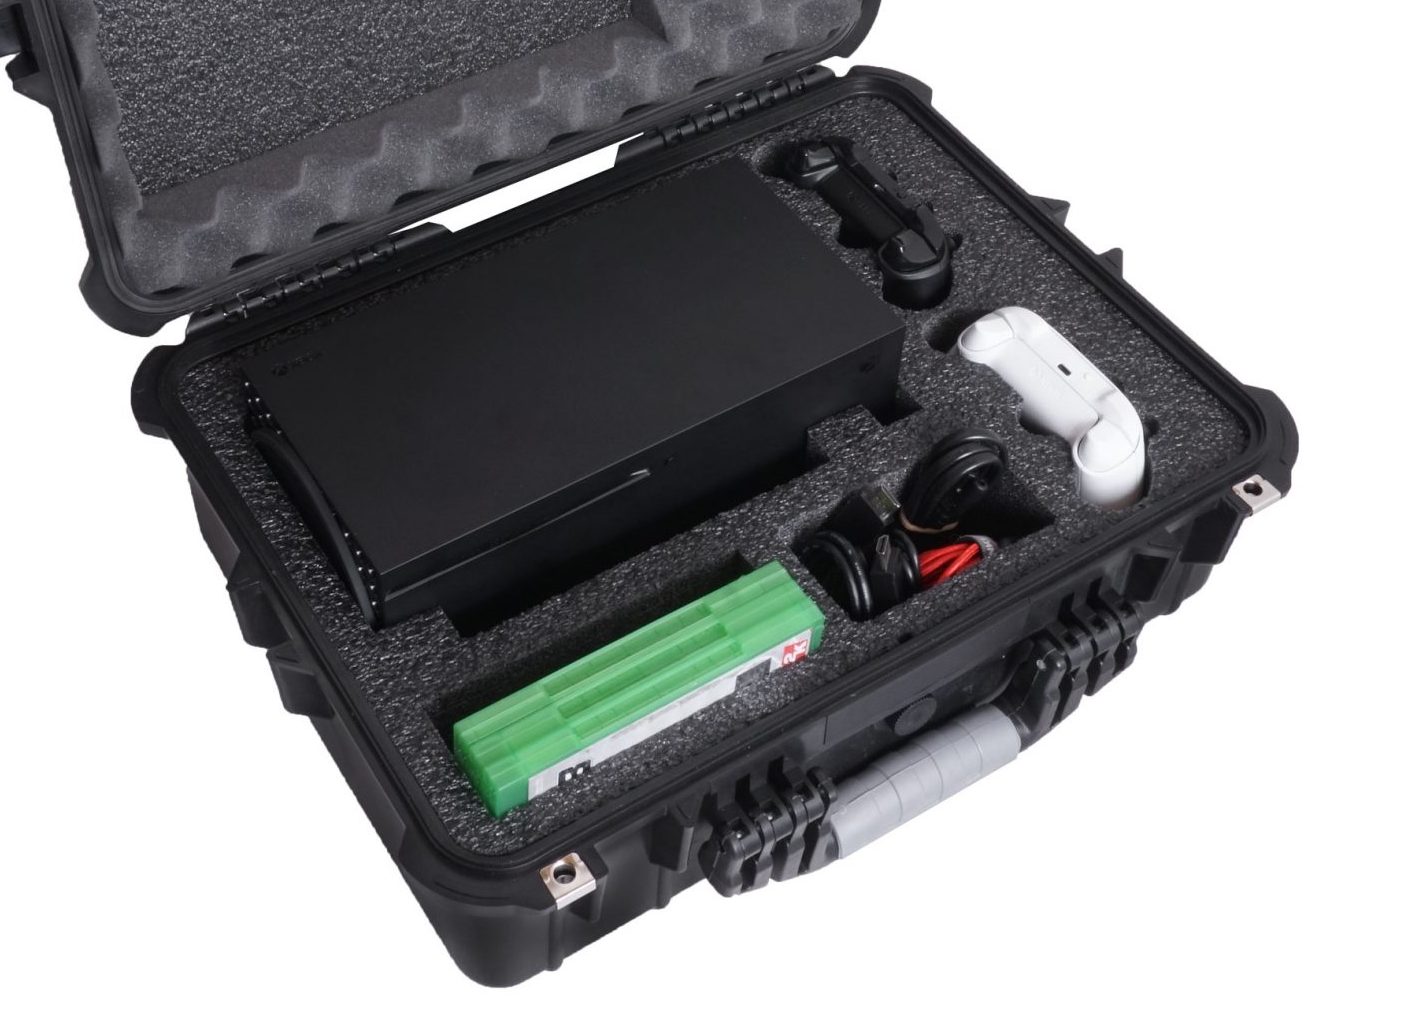 portable xbox case